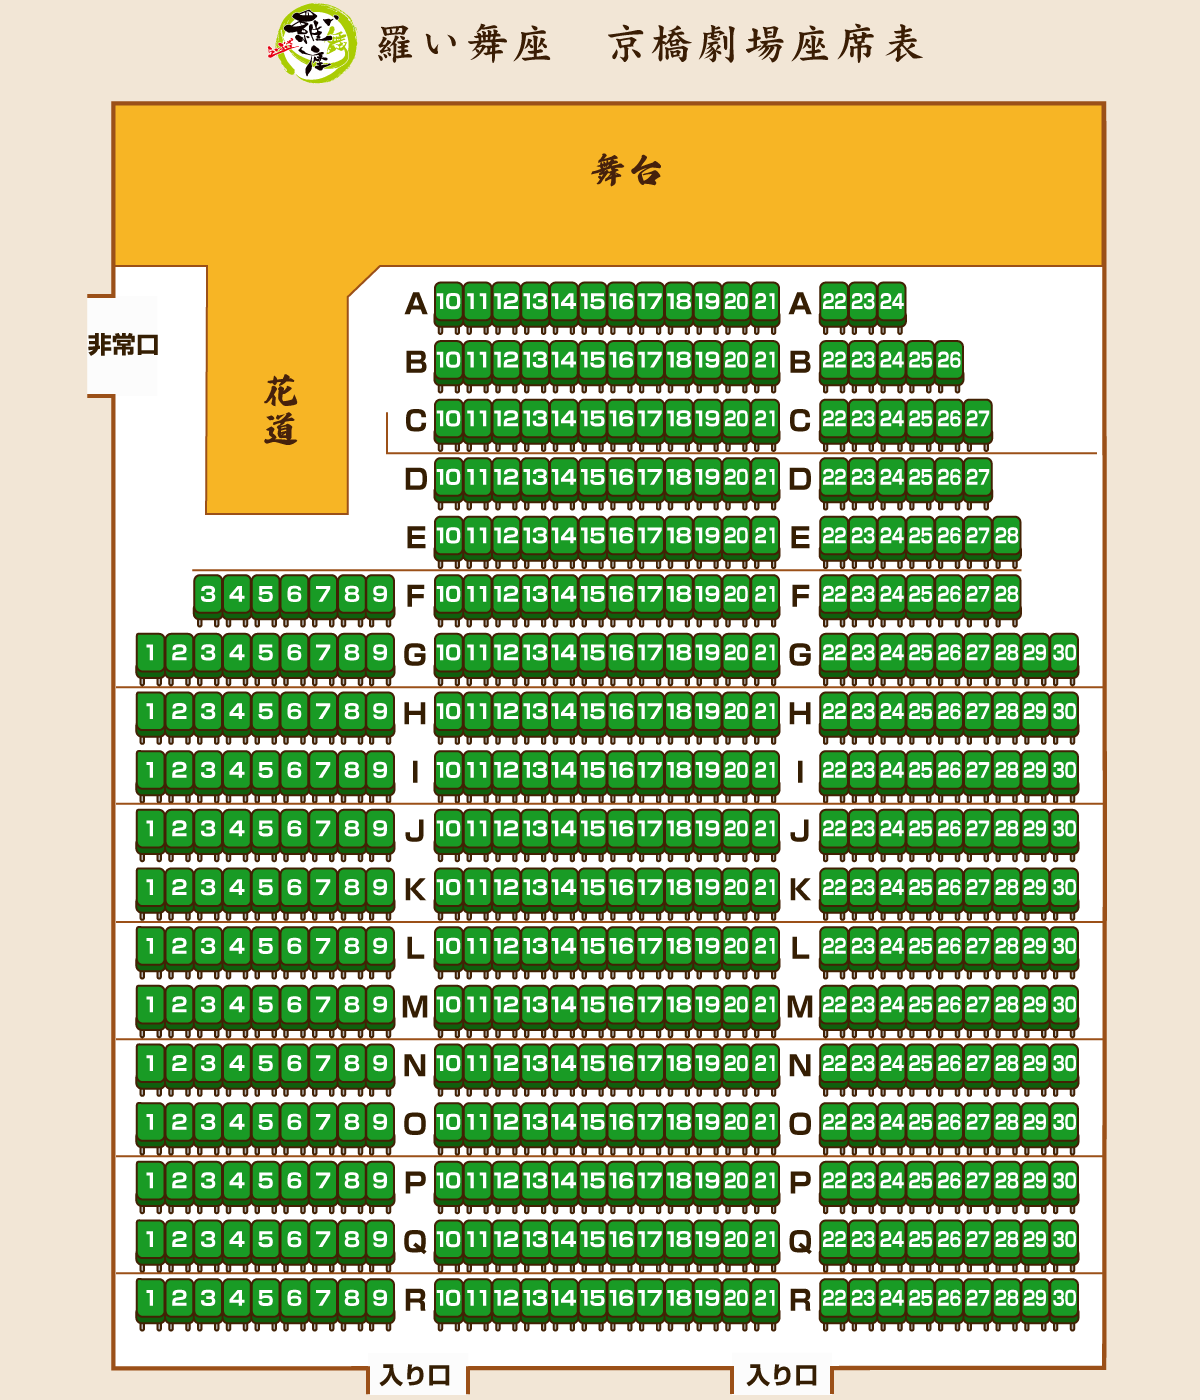 羅い舞座 京橋劇場座席表